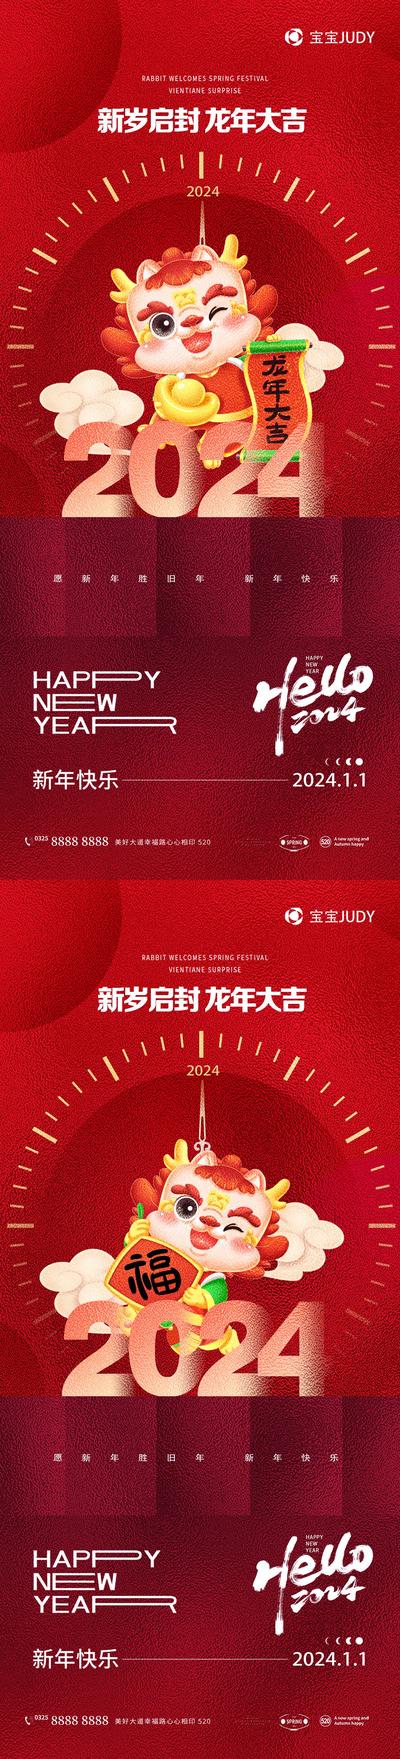 南门网 广告 海报 节日 元旦 龙年 2024 插画 新年 春节 祝福 系列